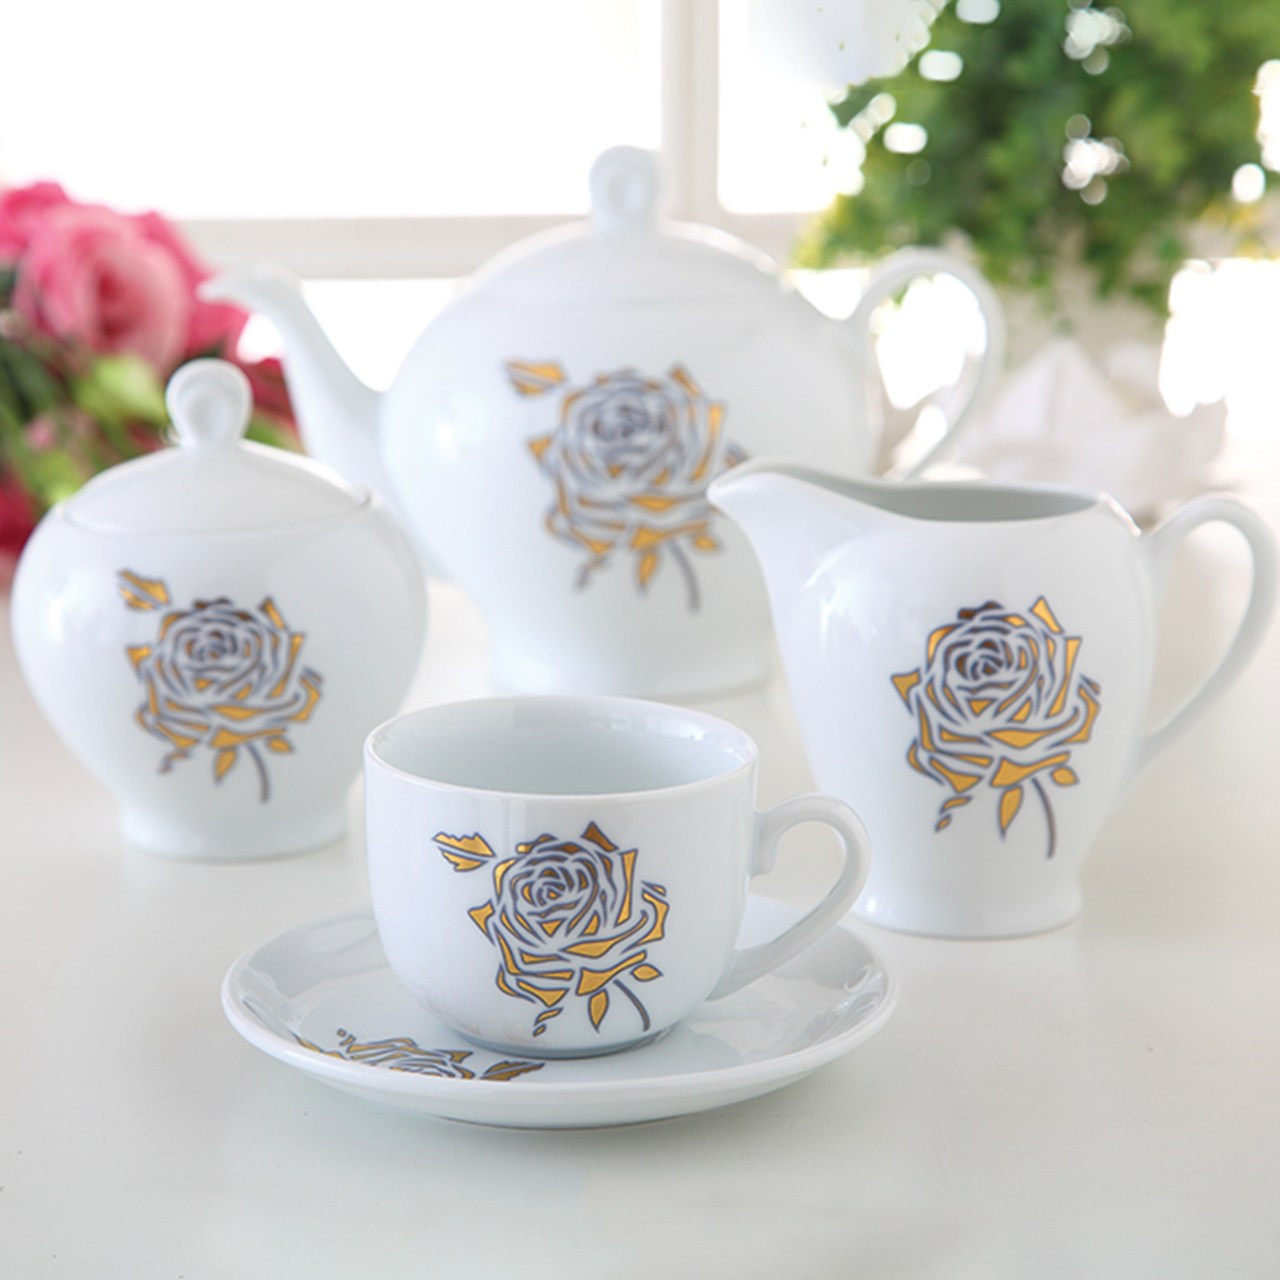 سرویس چای خوری 17 پارچه چینی زرین ایران سری ایتالیا اف مدل Fiore درجه یک